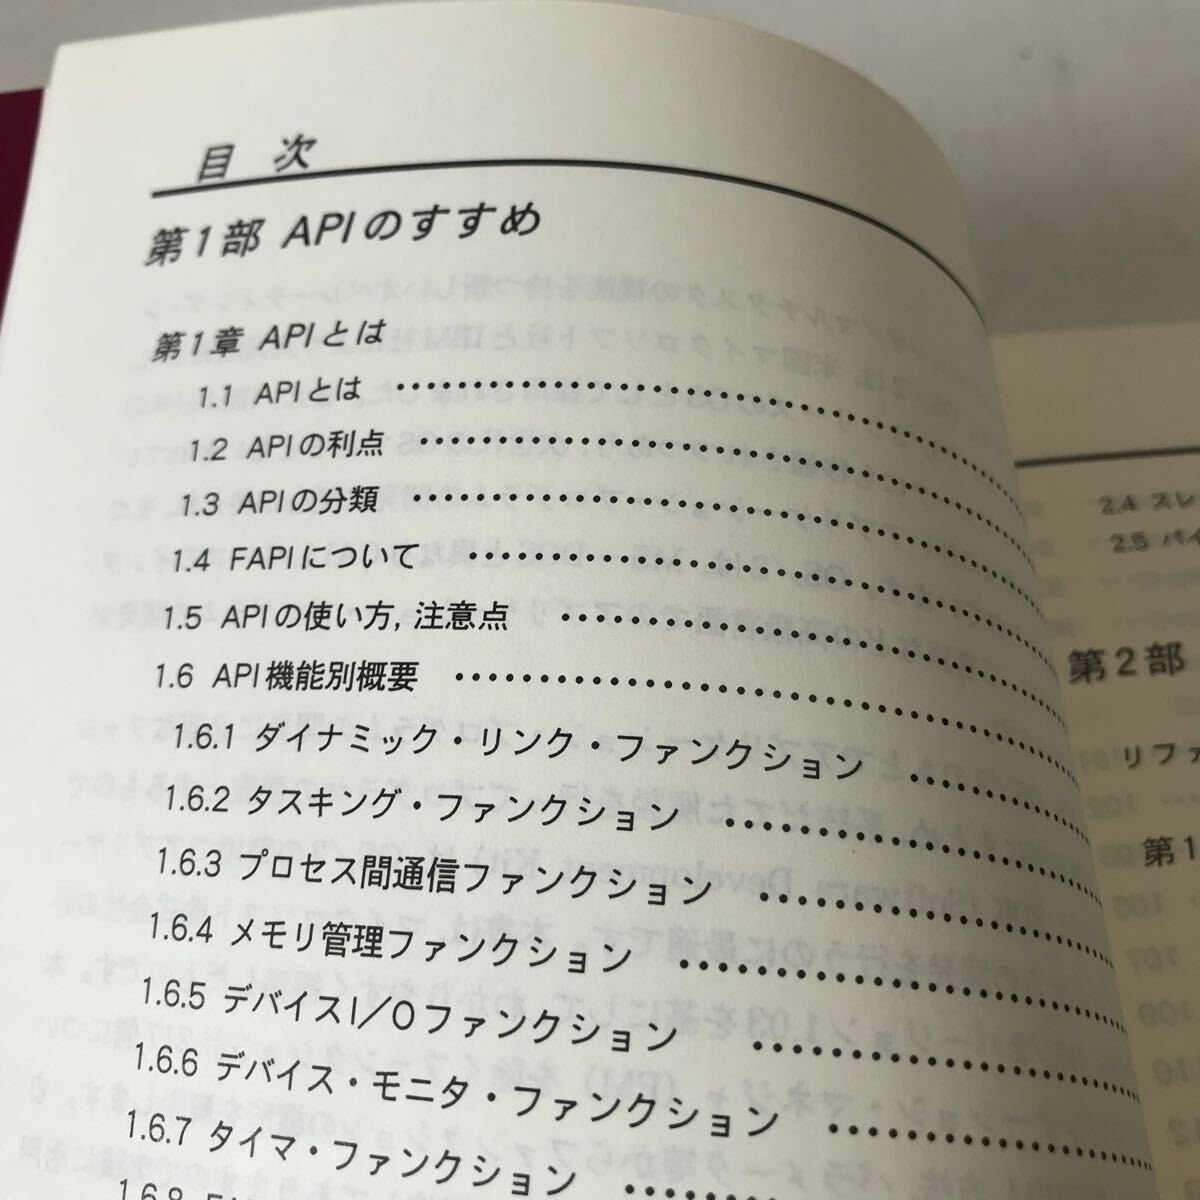 R10^ OS/2 API программист -z* книжка 1988 год 12 месяц первая версия выпуск Fuji программное обеспечение образование выпускать часть / редактирование с поясом оби прекрасный книга@^240516